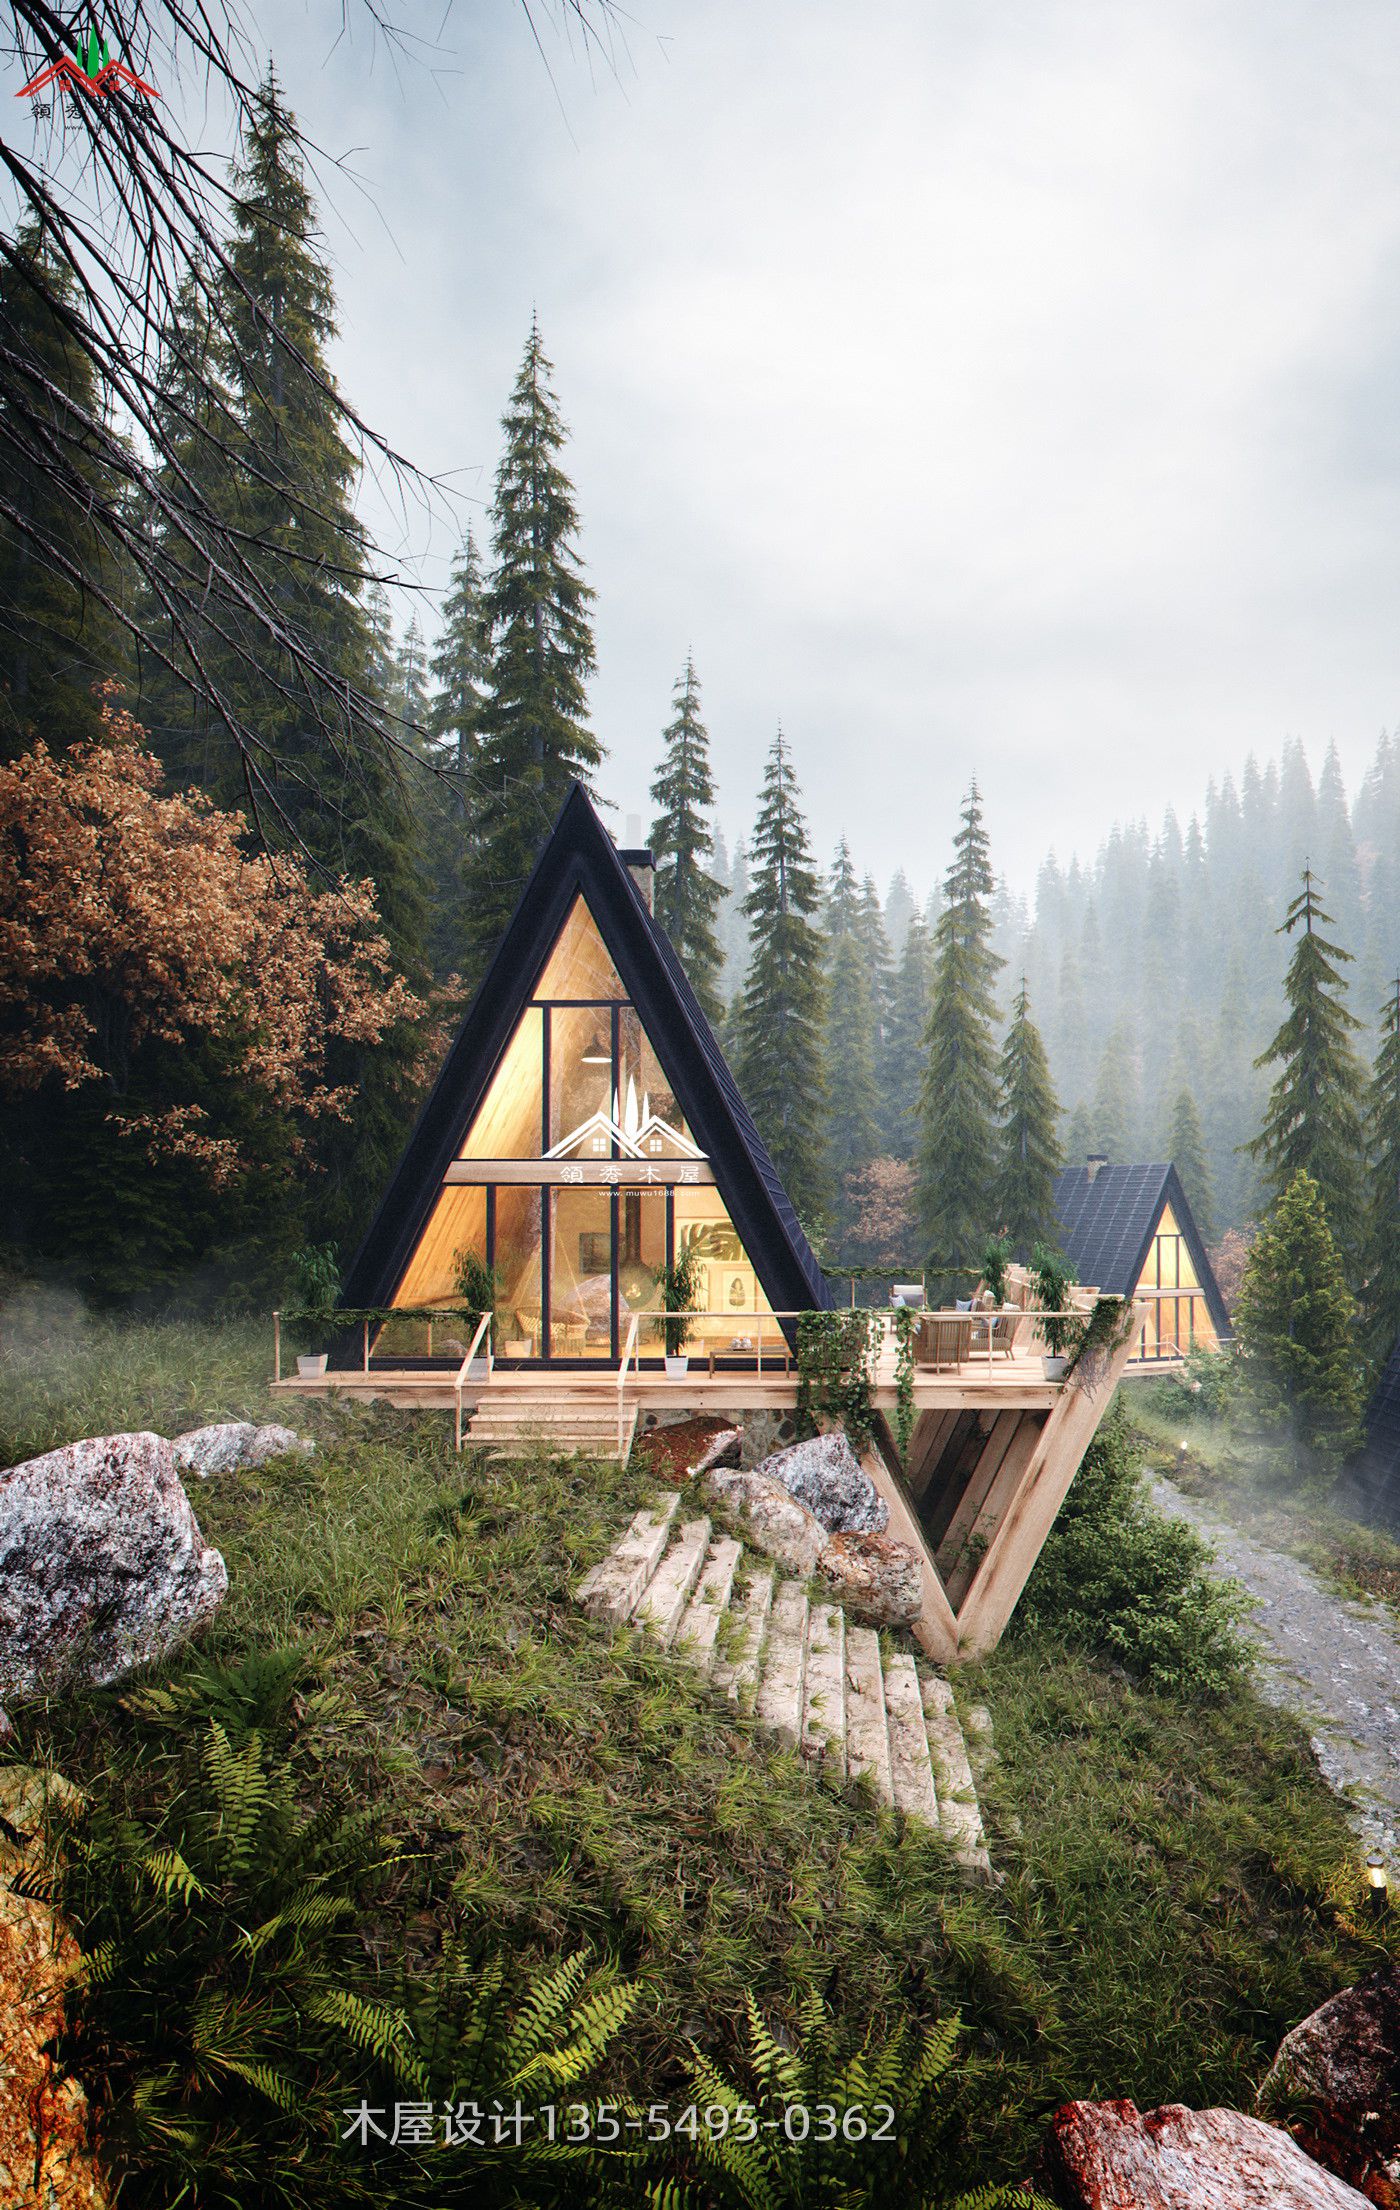 三角形特色木屋,适合森林里池塘边河边亲水木屋及作民宿酒店